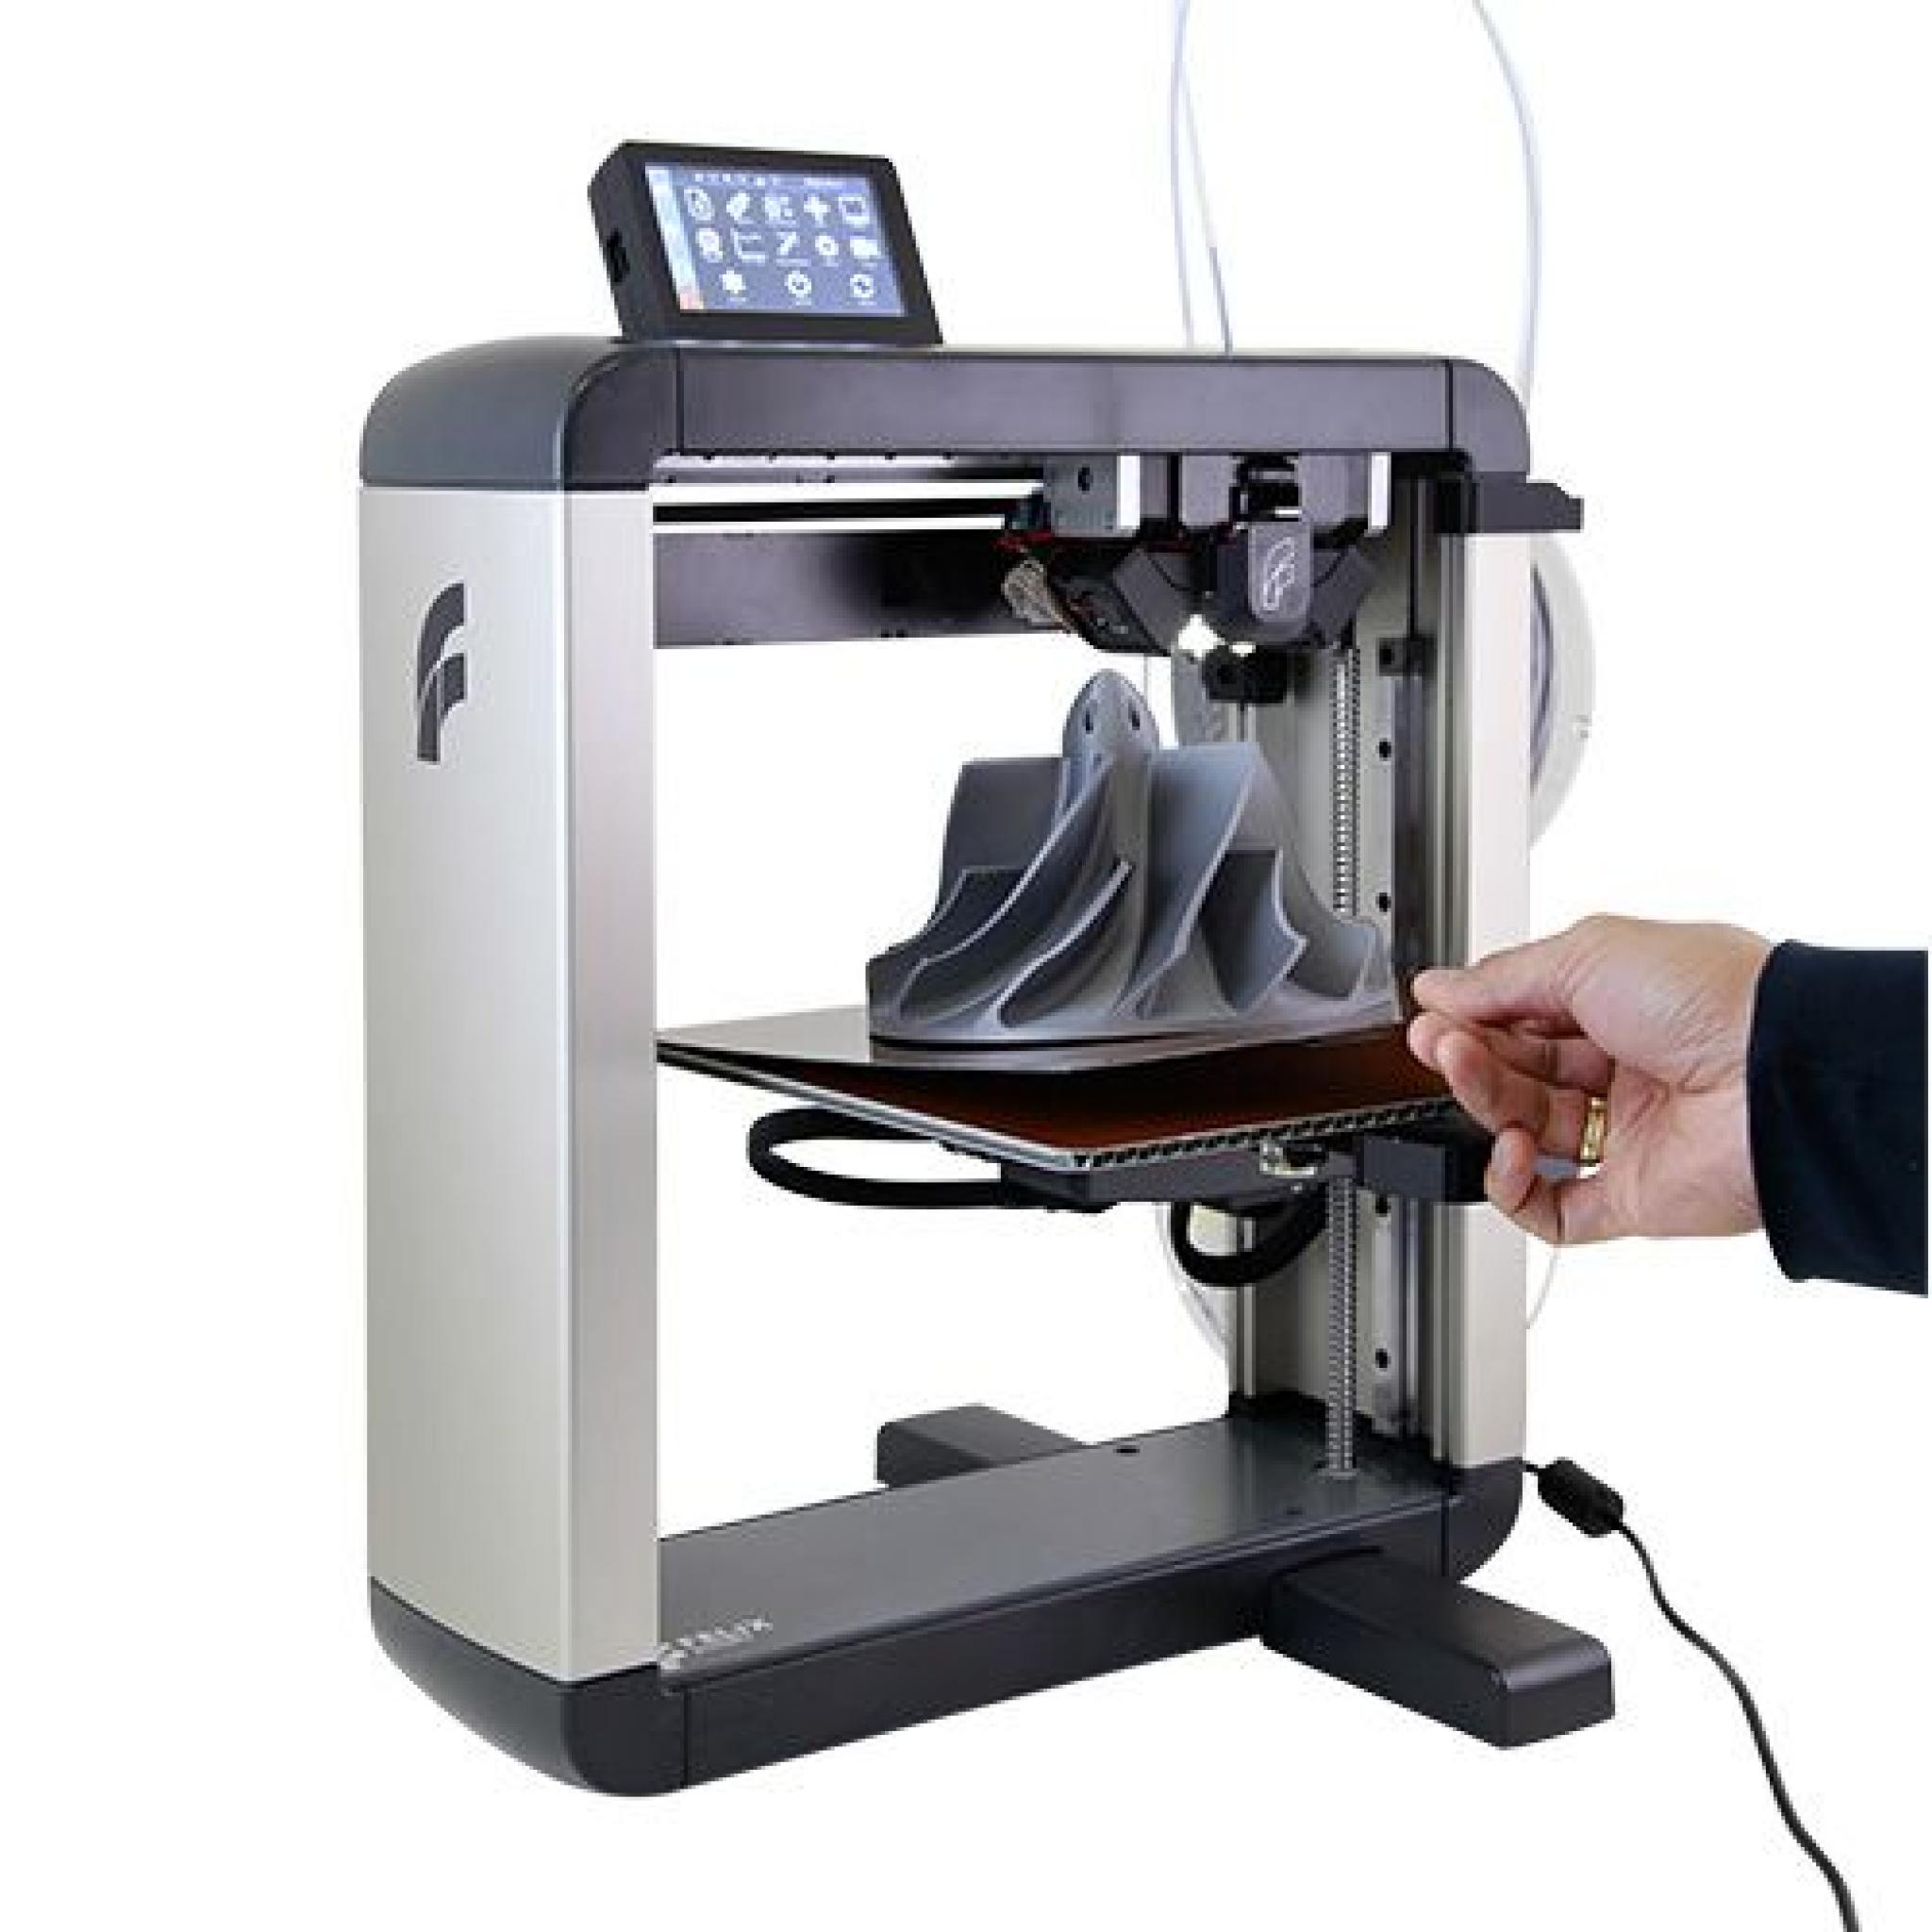 Felix Pro 3 Touch 3D printer - F4eaa593fb59f002a946b0160c85D3Db